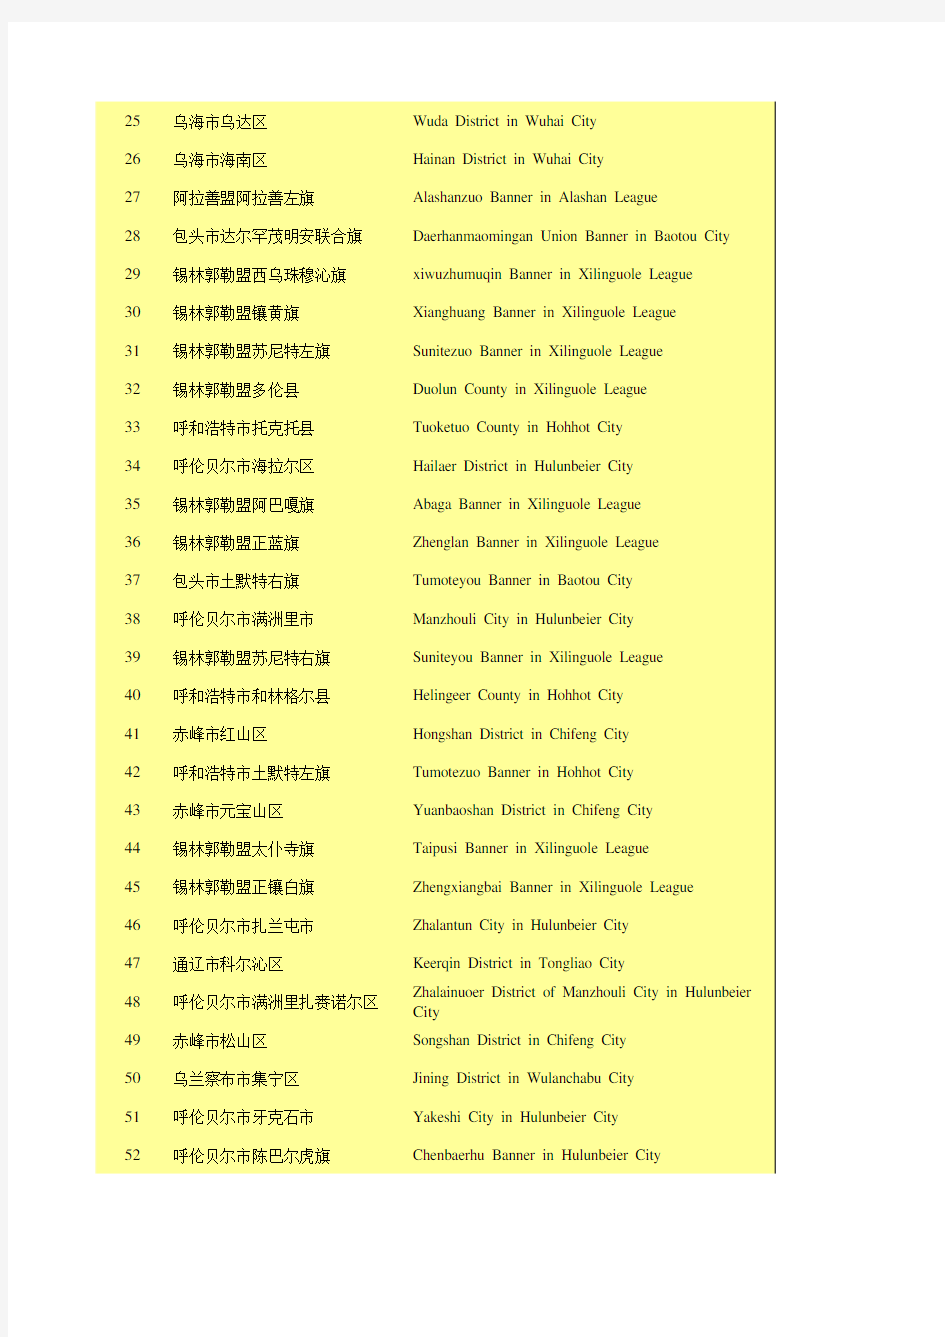 内蒙古统计年鉴2020社会经济发展指标：各旗县(区)按城镇常住居民人均可支配收入排序(2019年)